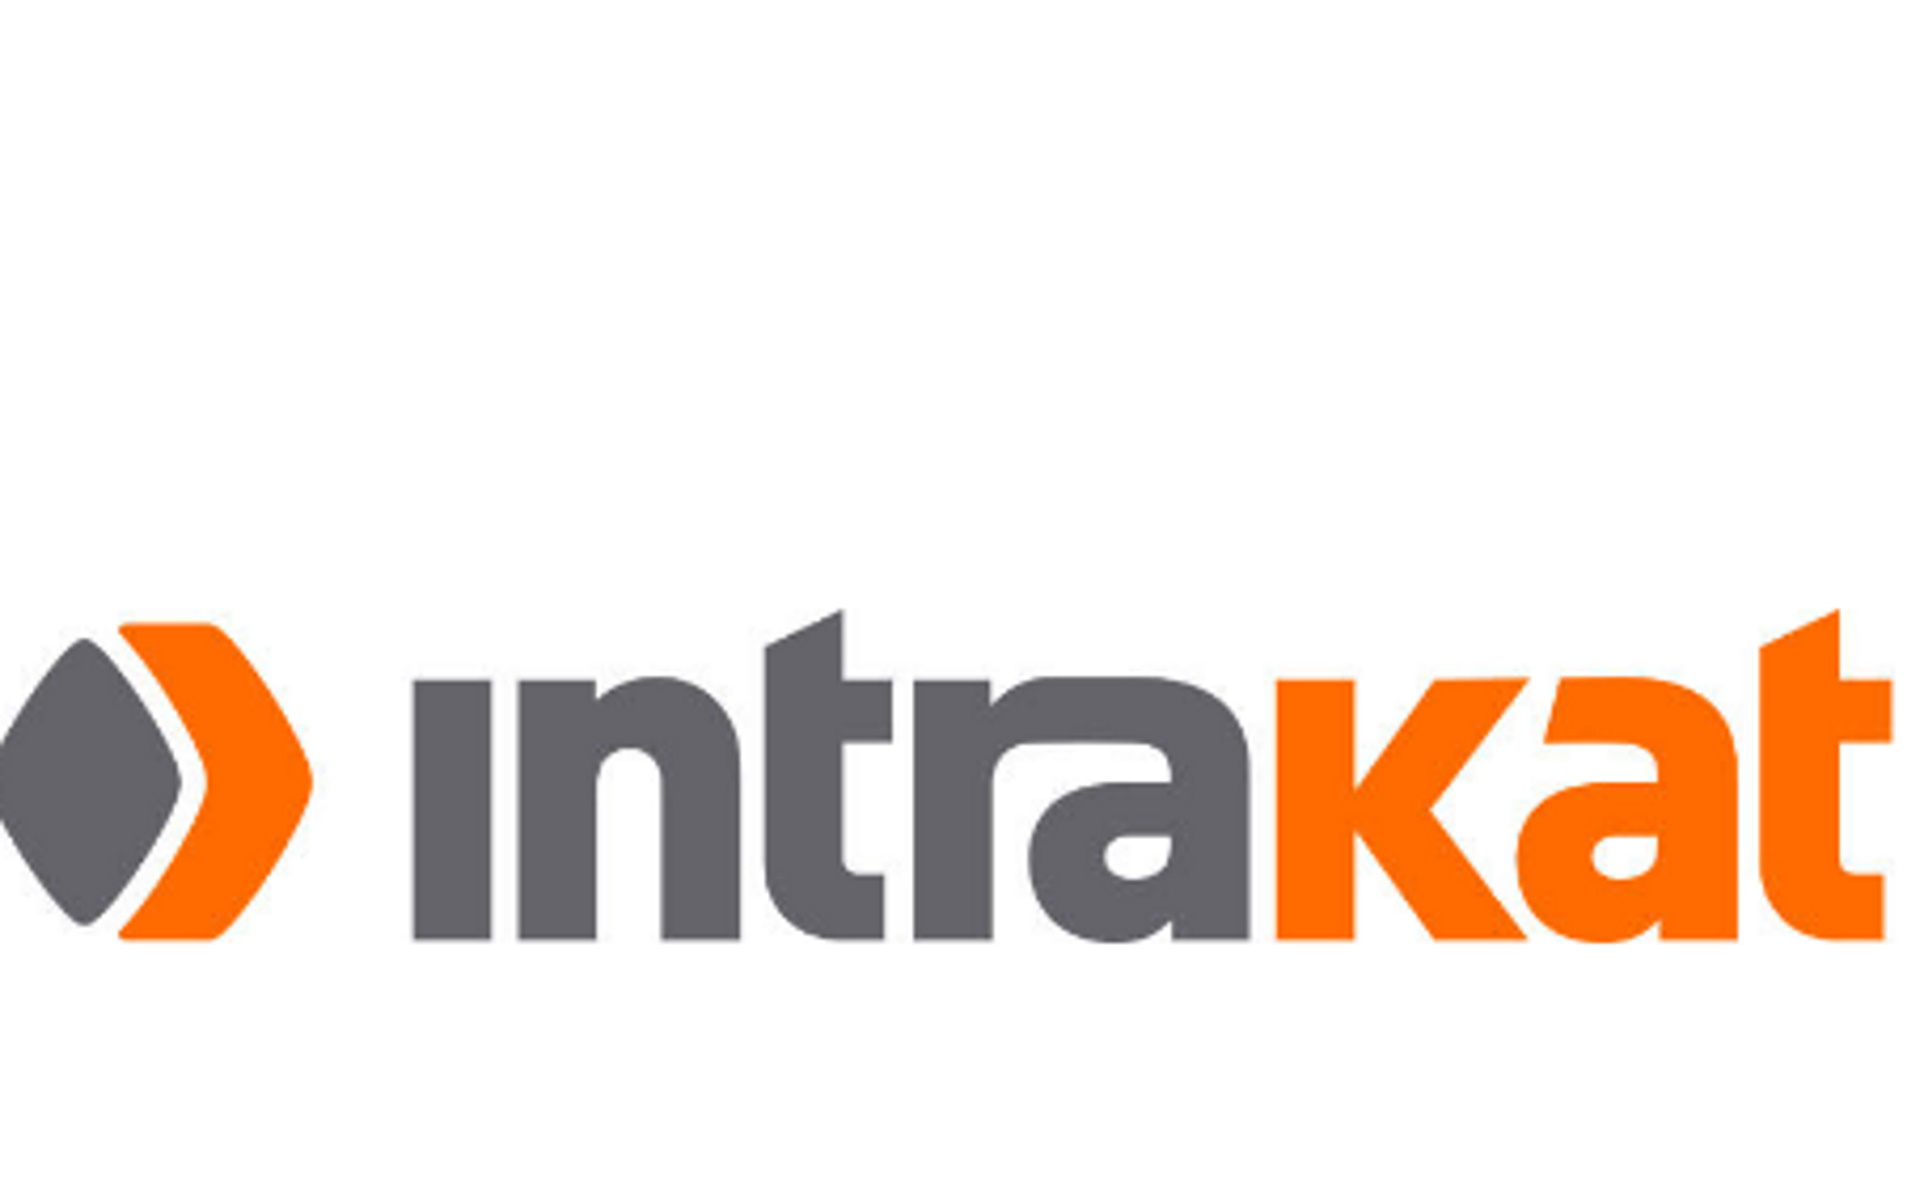 Intrakat: Απέκτησε την DNC Energy με χαρτοφυλάκιο αδειών φωτοβολταϊκών σταθμών ισχύος 520 MW